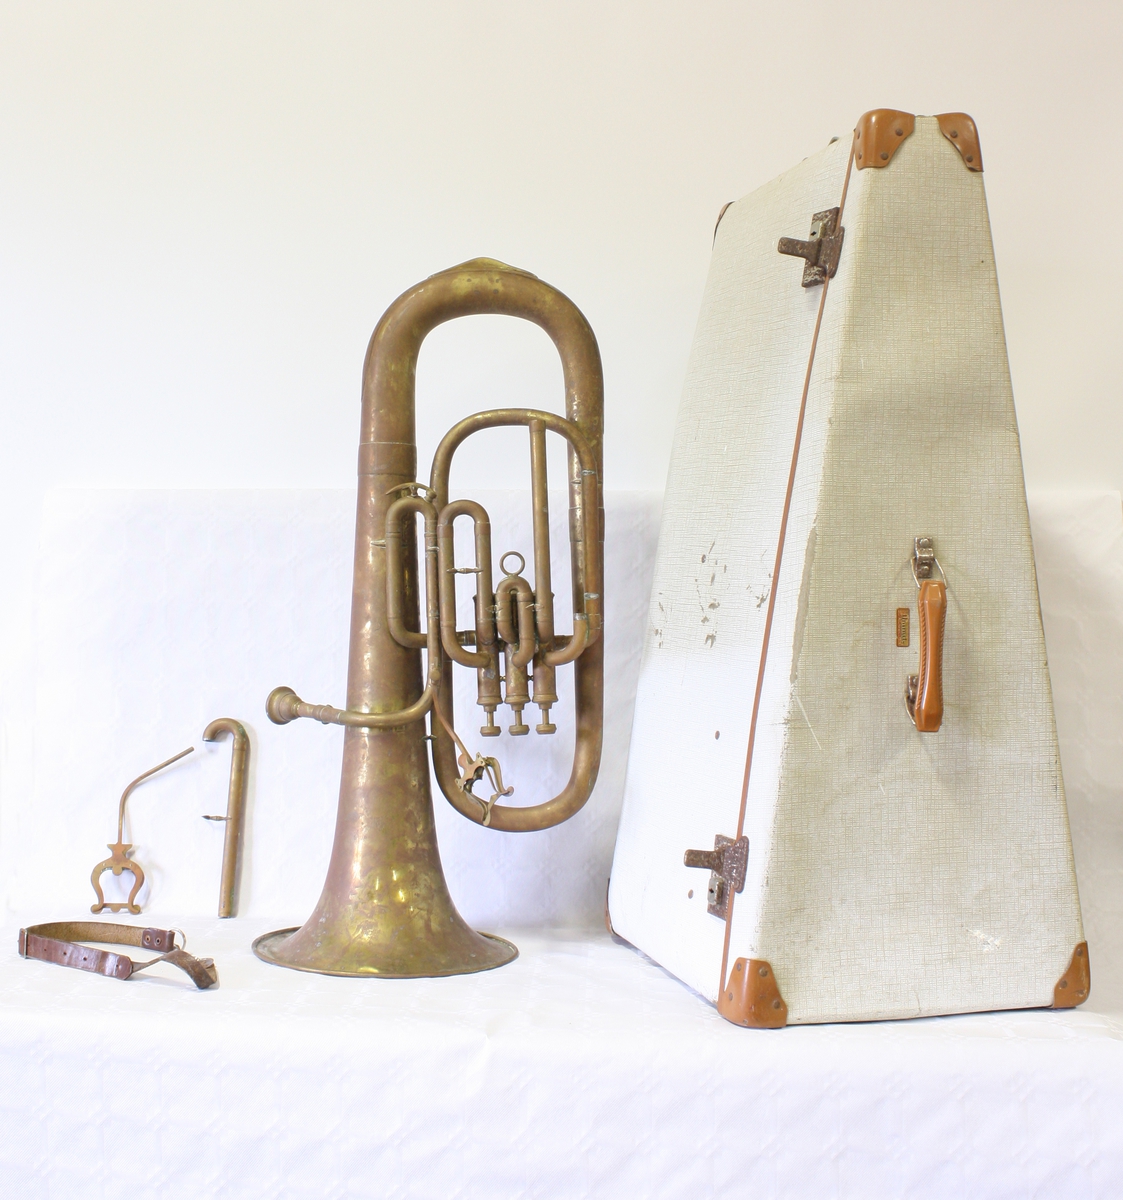 Blåseinstrument med tre ventiler, likner en liten tuba i fasongen. Eufoniumen har en oppbevaringskasse tilpasset dens form.